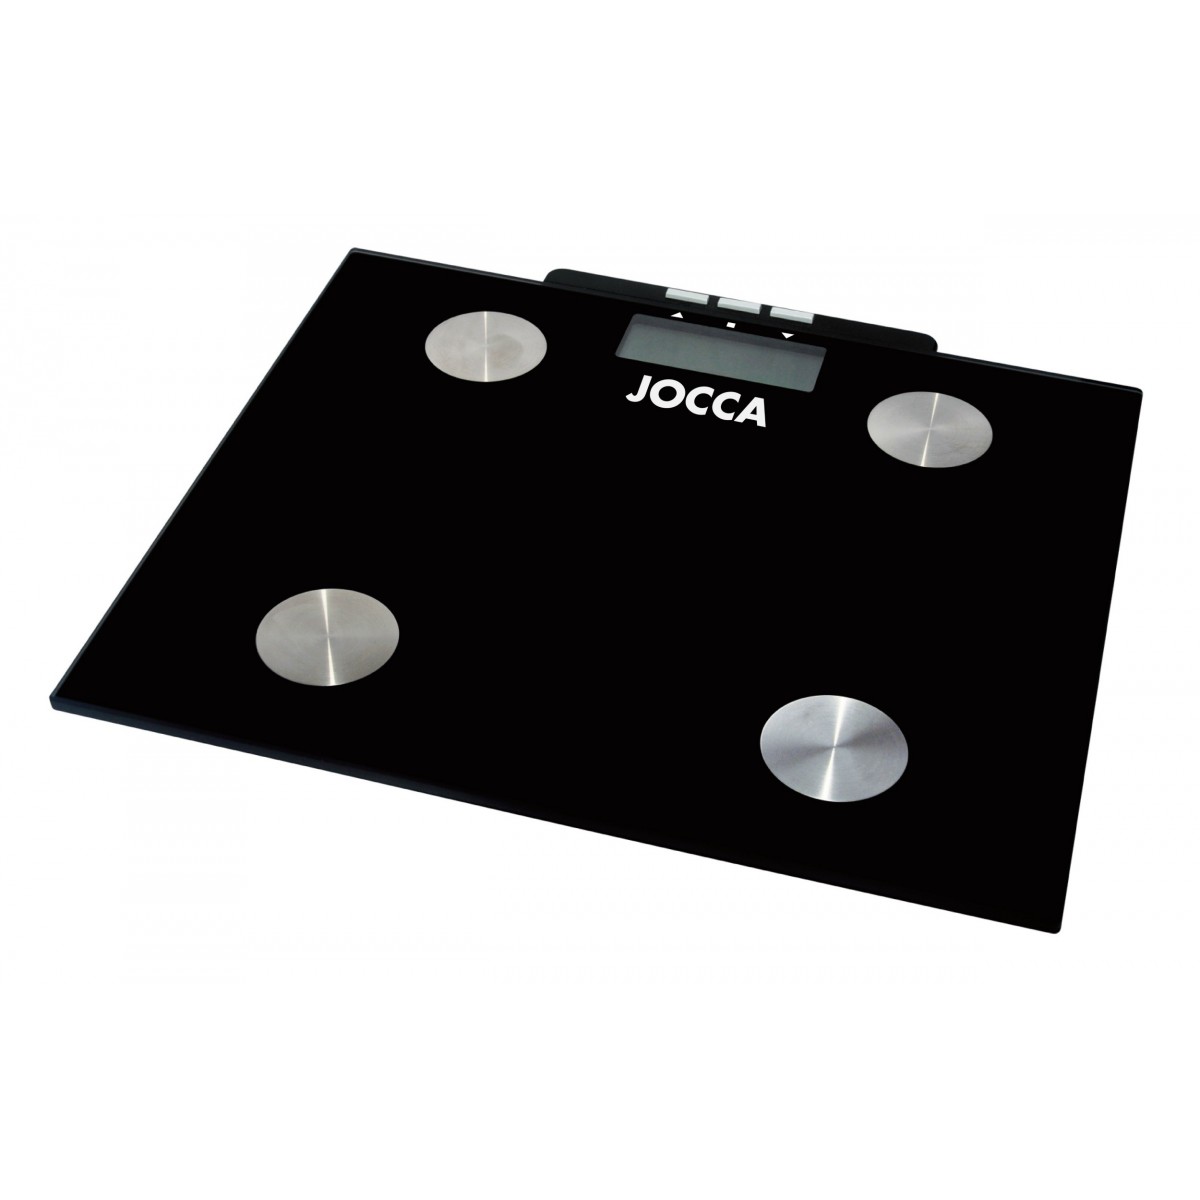 Jocca Pèse-personne mesure la graisse - Écran LCD - 10 mémoires - Plate-forme en verre - Max. 150 kg - Arrêt automatique